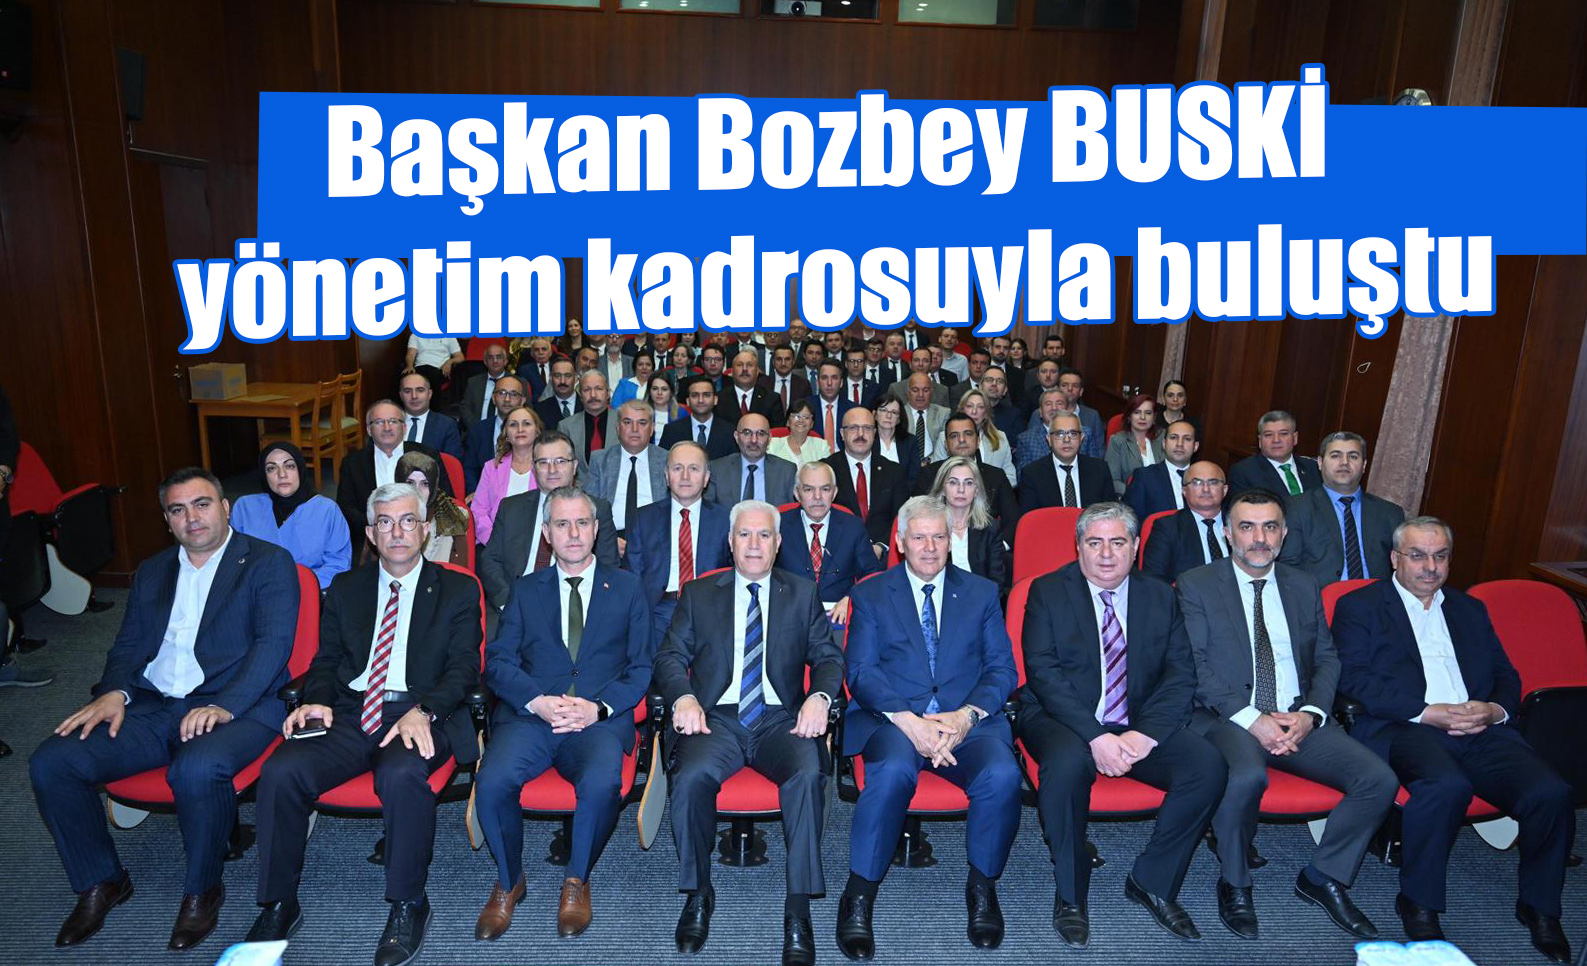 Başkan Bozbey BUSKİ yönetim kadrosuyla buluştu